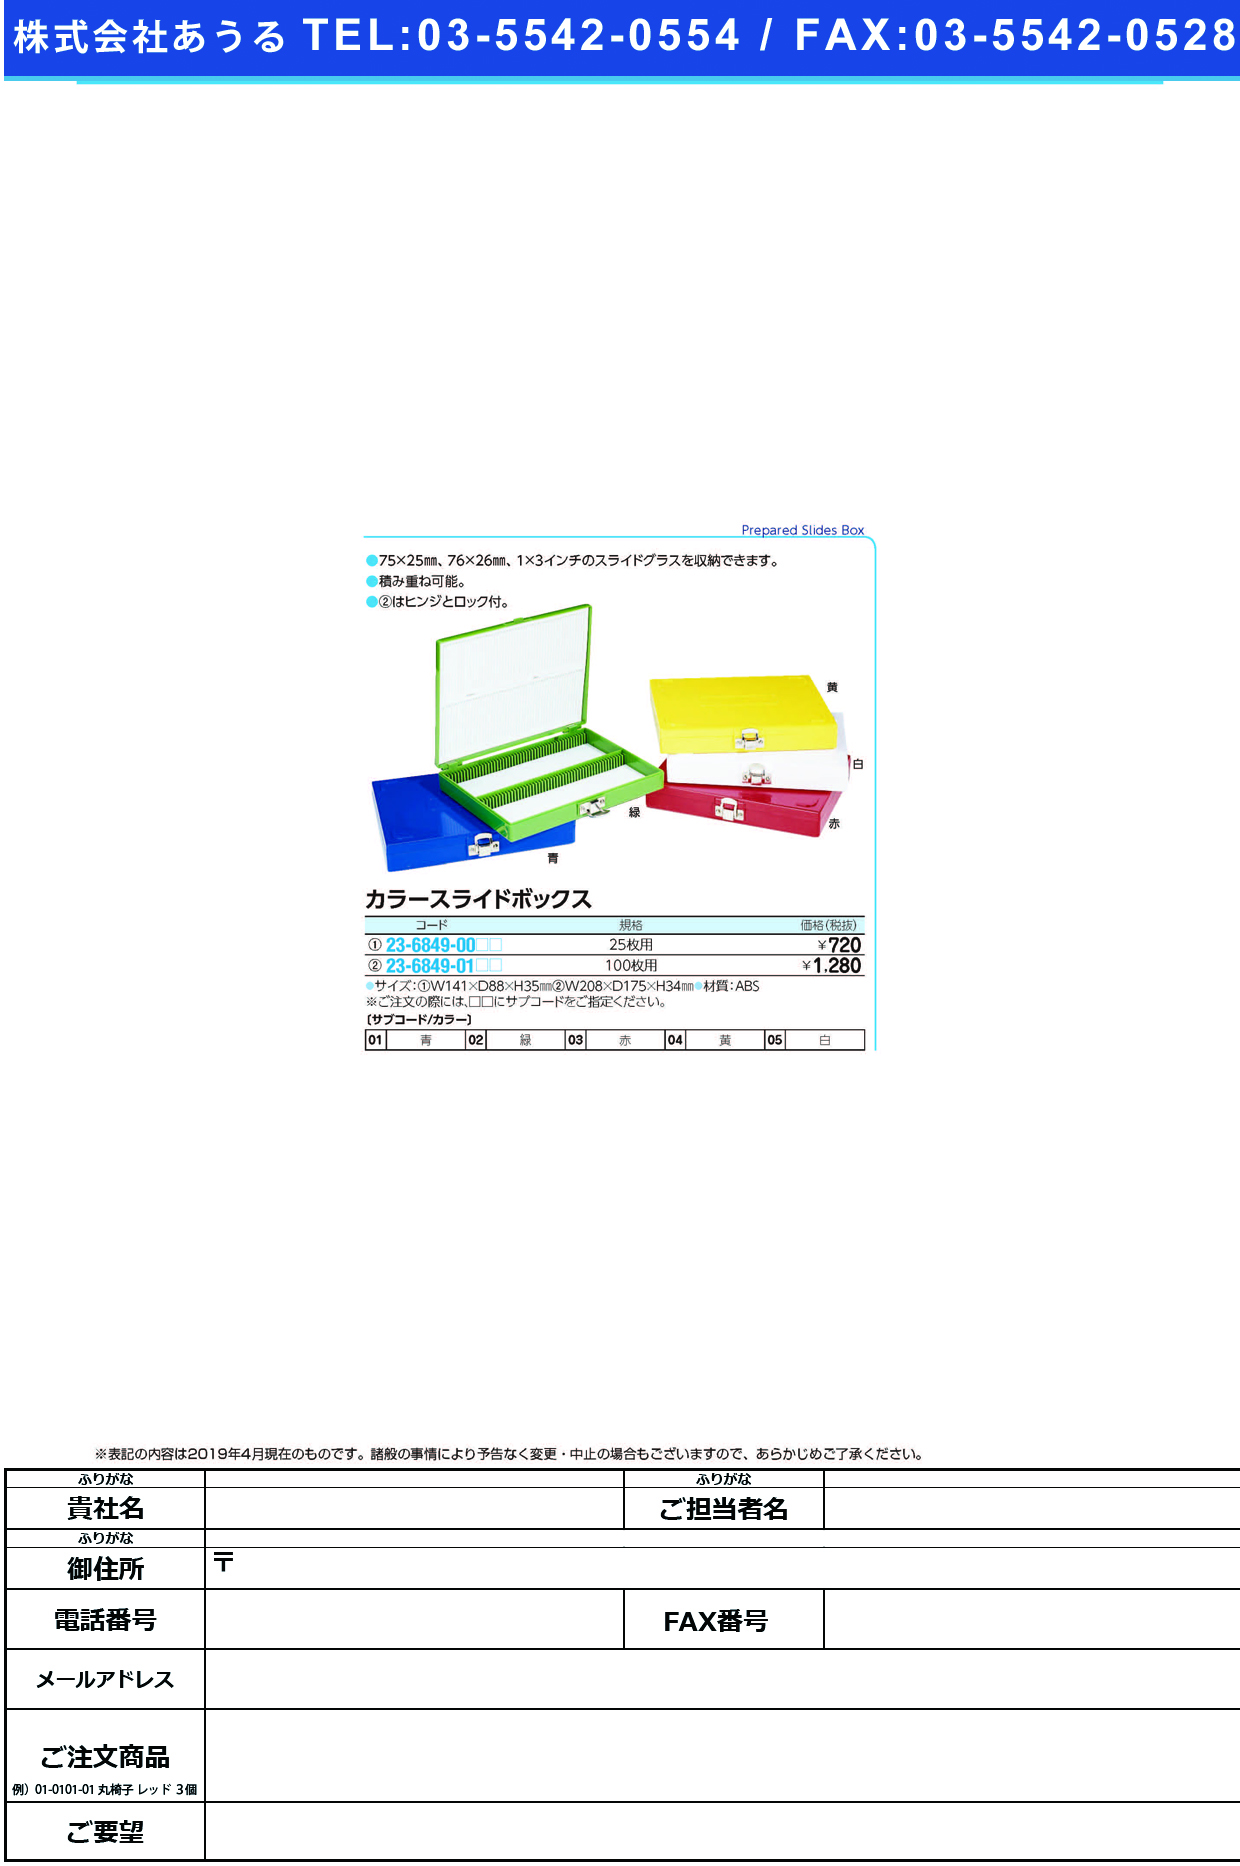 (23-6849-00)カラースライドボックス 25ﾏｲﾖｳ ｶﾗｰｽﾗｲﾄﾞﾎﾞｯｸｽ 青【1個単位】【2019年カタログ商品】